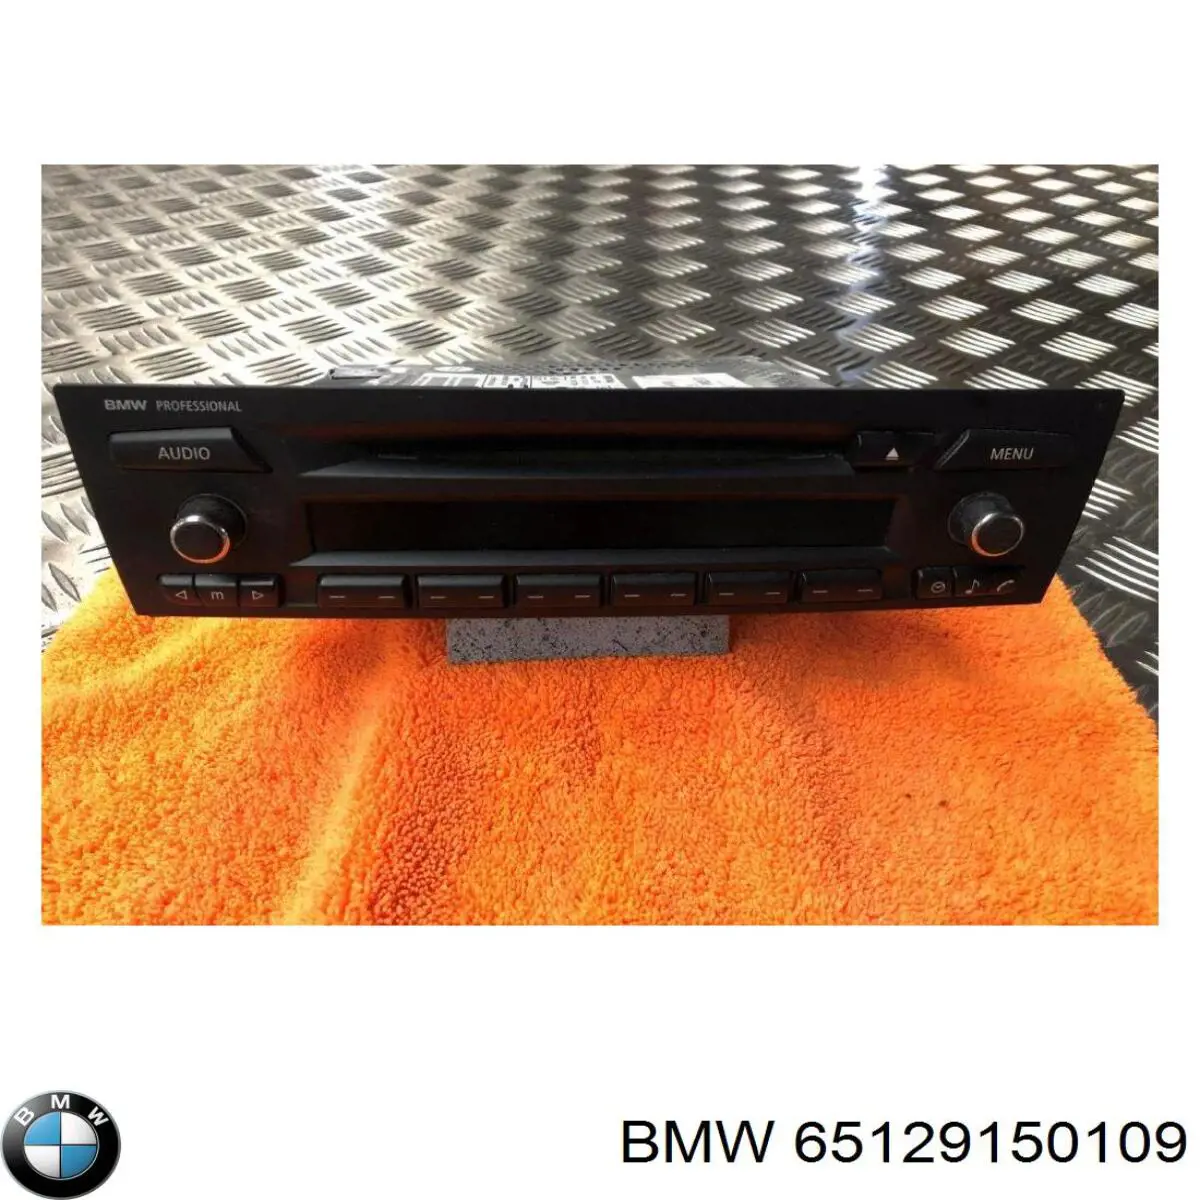 65129150109 BMW radio (radio am/fm)